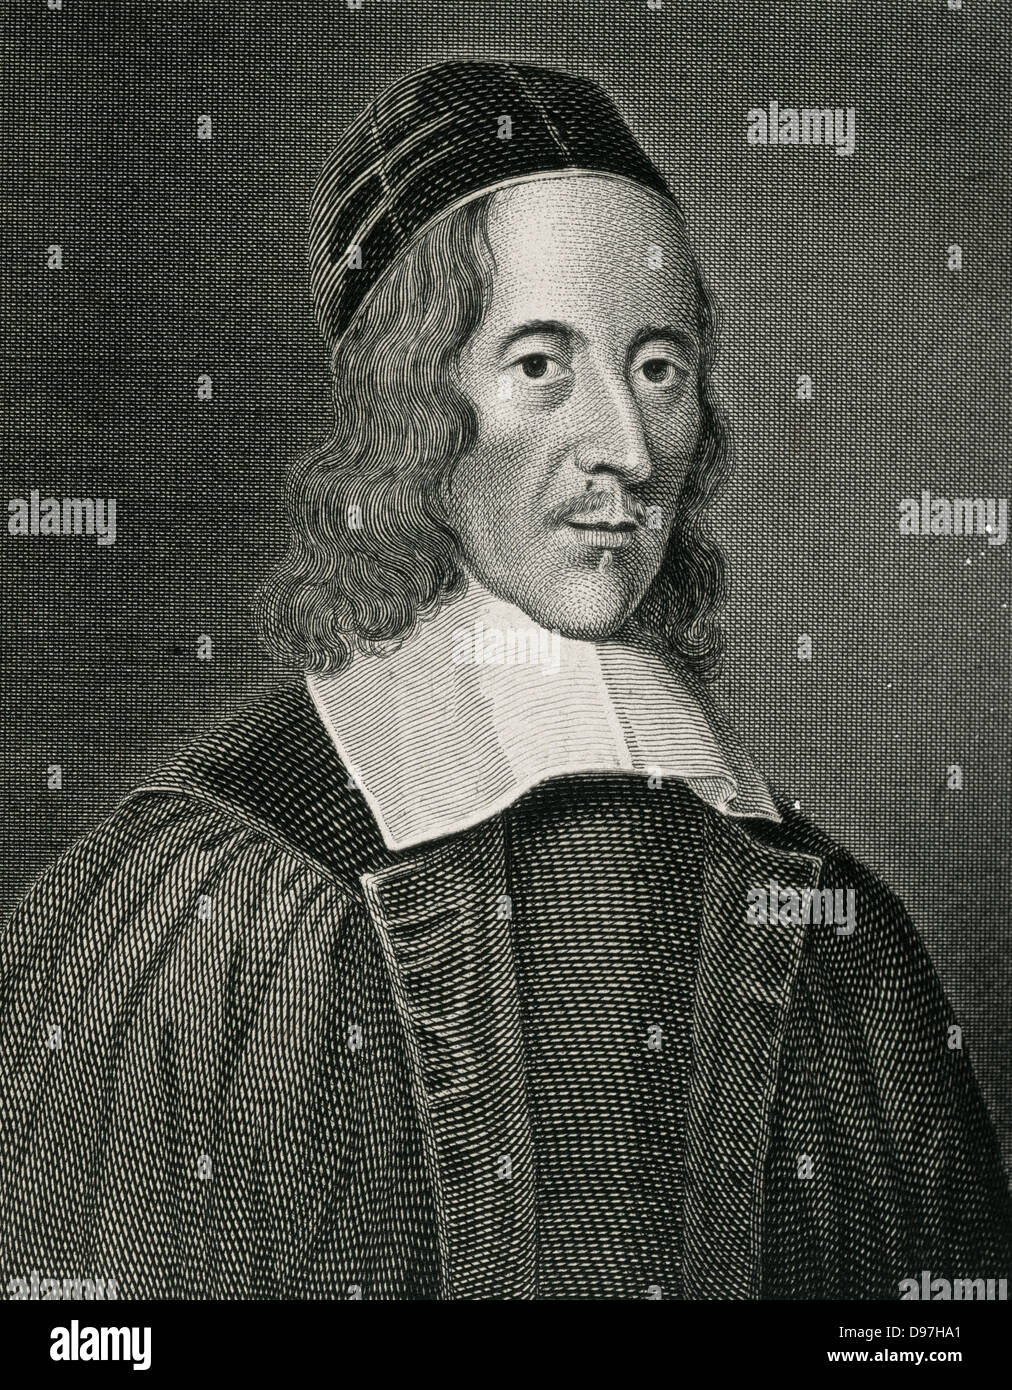 George Herbert (1593 – 1633). Welsh-geboren, englischer Dichter, Redner und anglikanischer Priester. Kupferstich, 18. Jahrhundert. Stockfoto